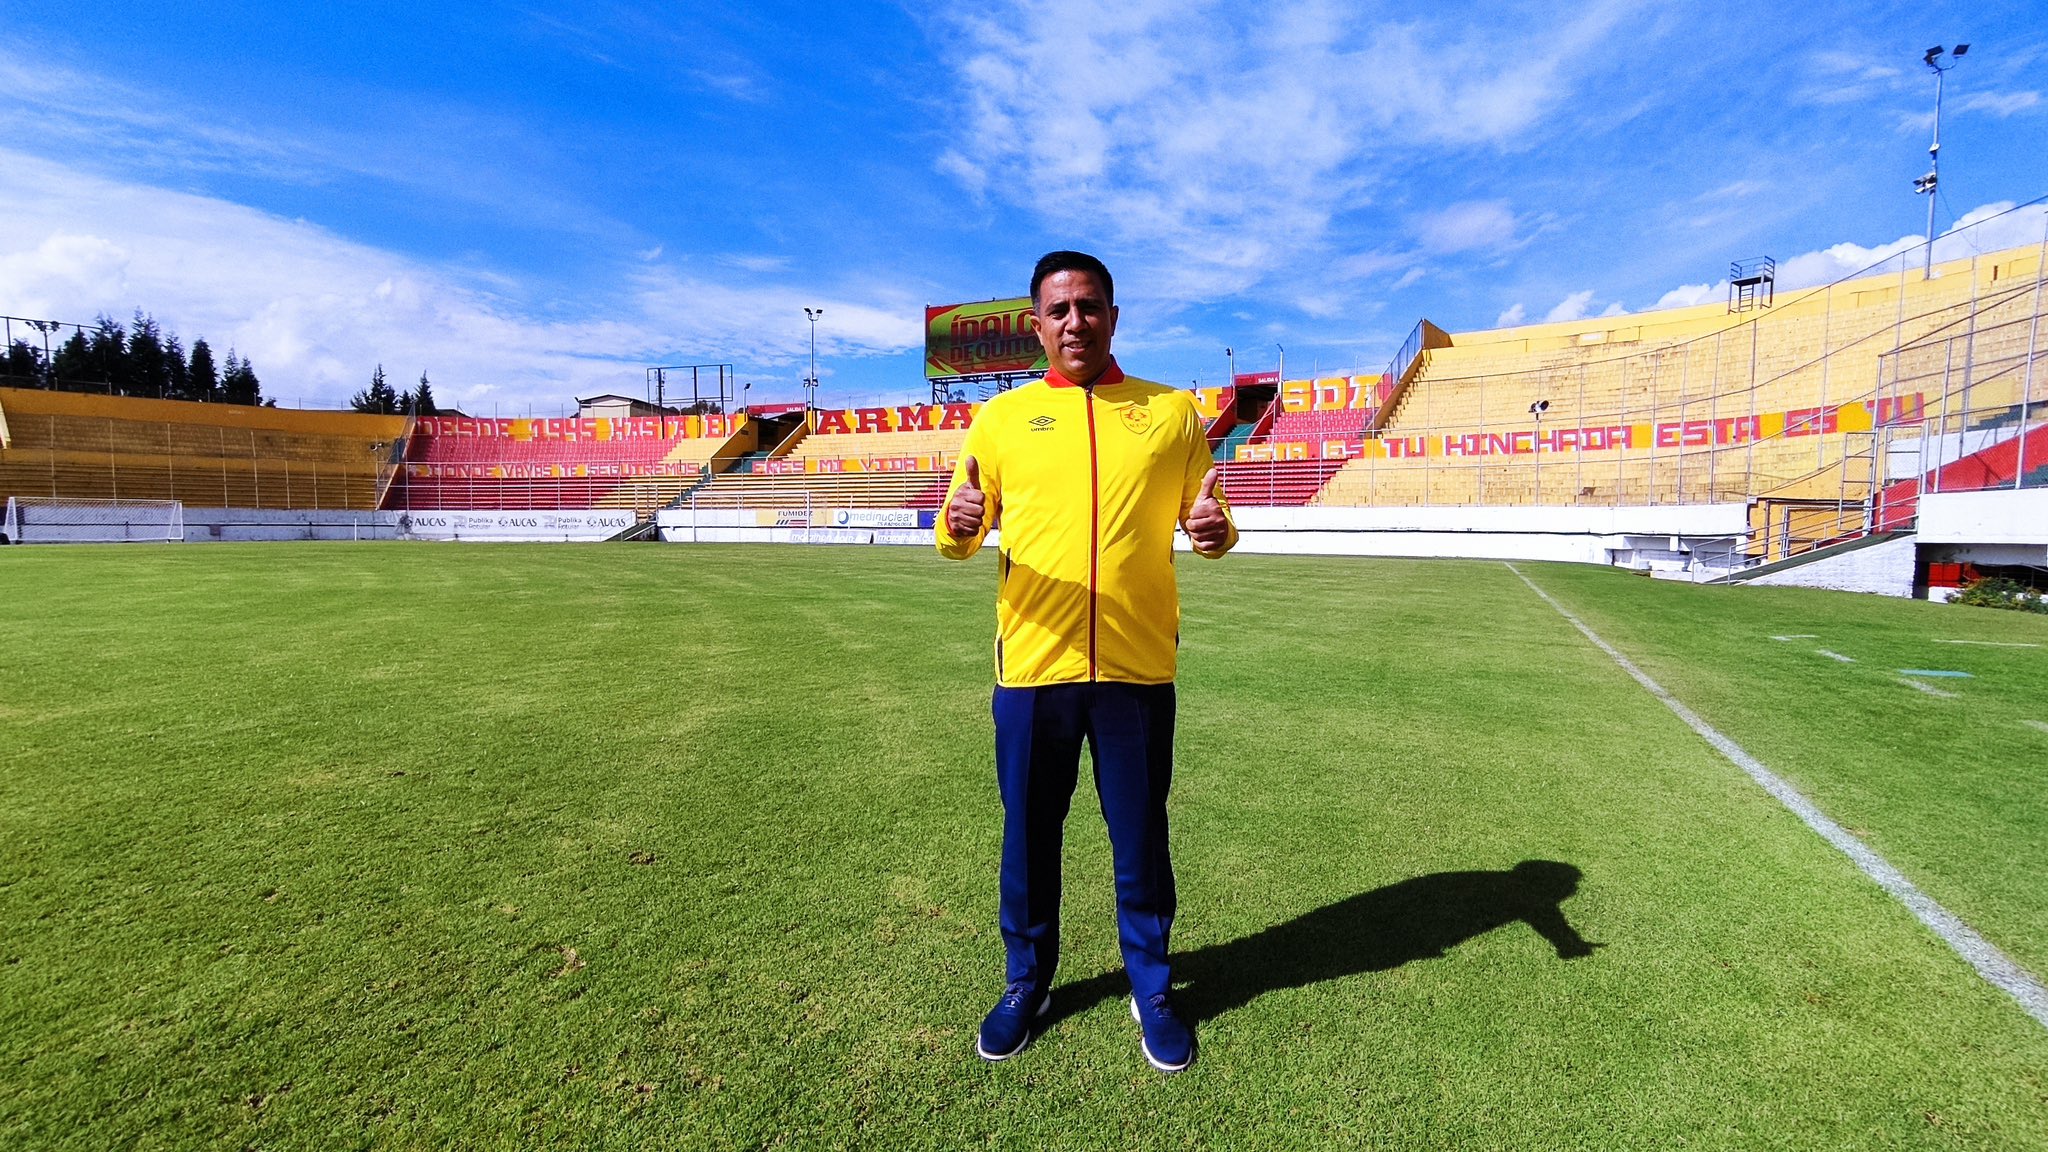 César Farías debuted with victory for Aucas in Ecuador